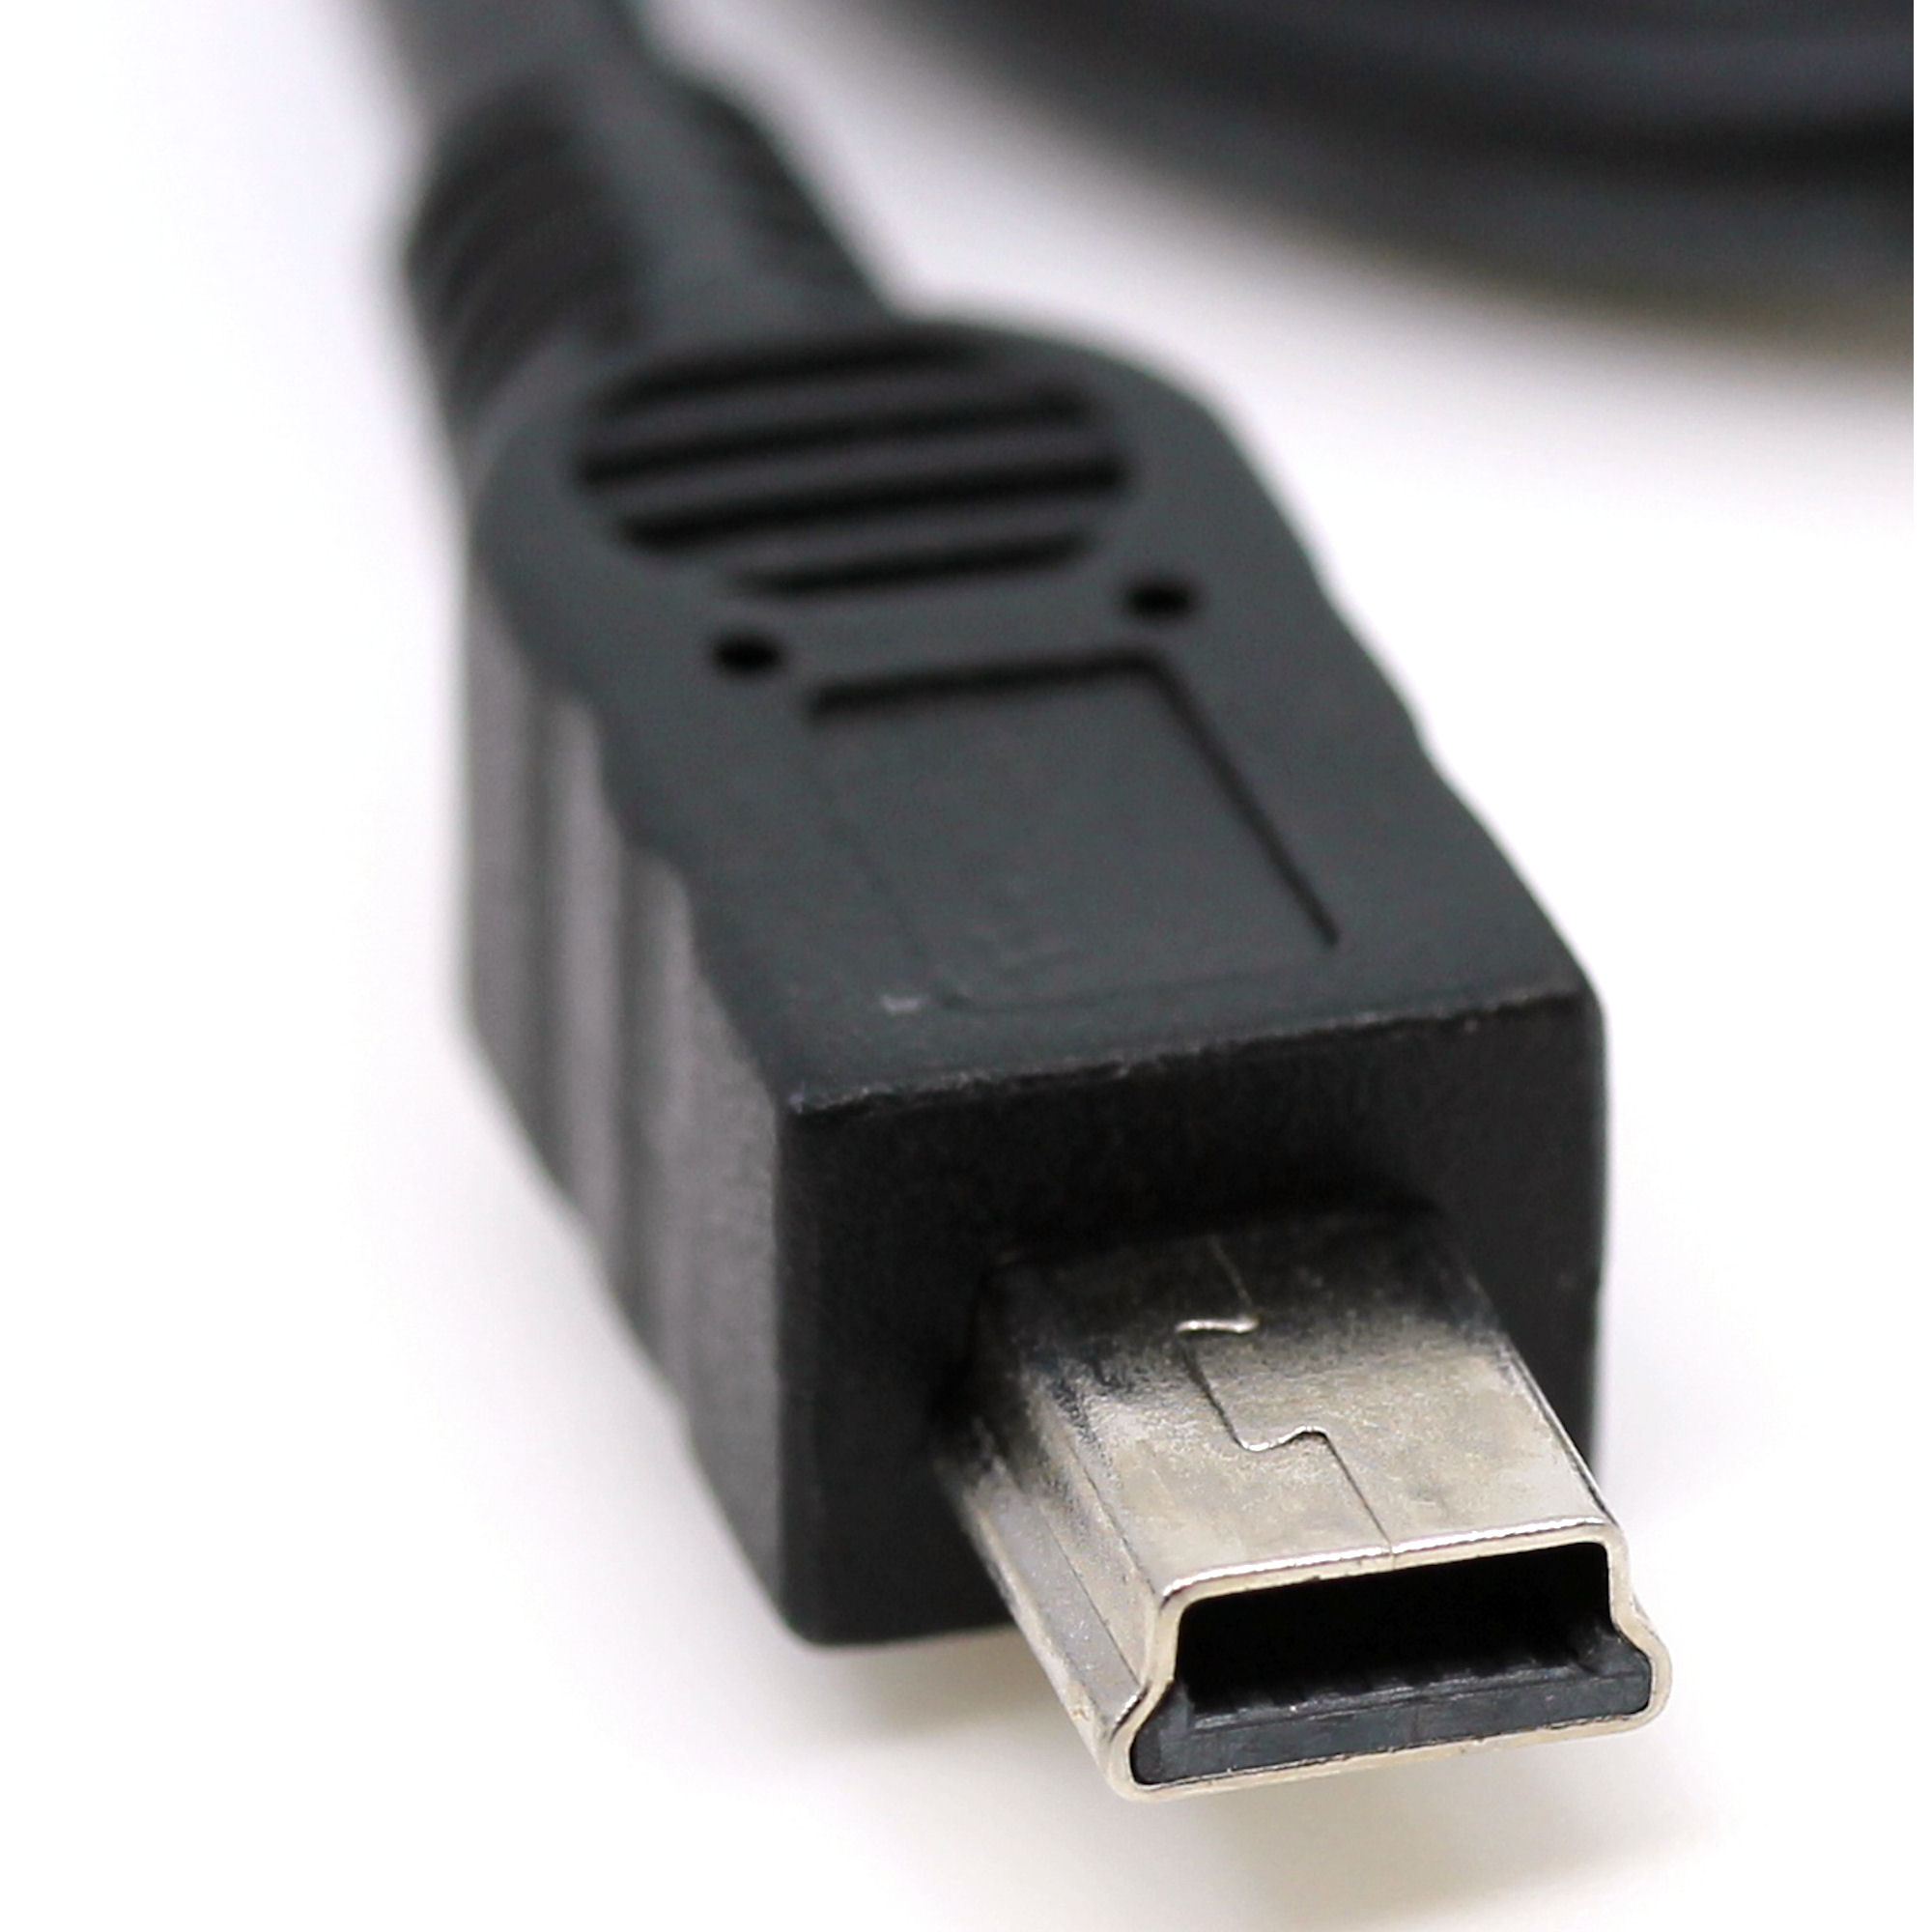 USB Datenkabel für JVC GR-D40, GR-D50, GR-D60, GR-D70, GR-D72, GR-D90, GR-D93, GR-D94